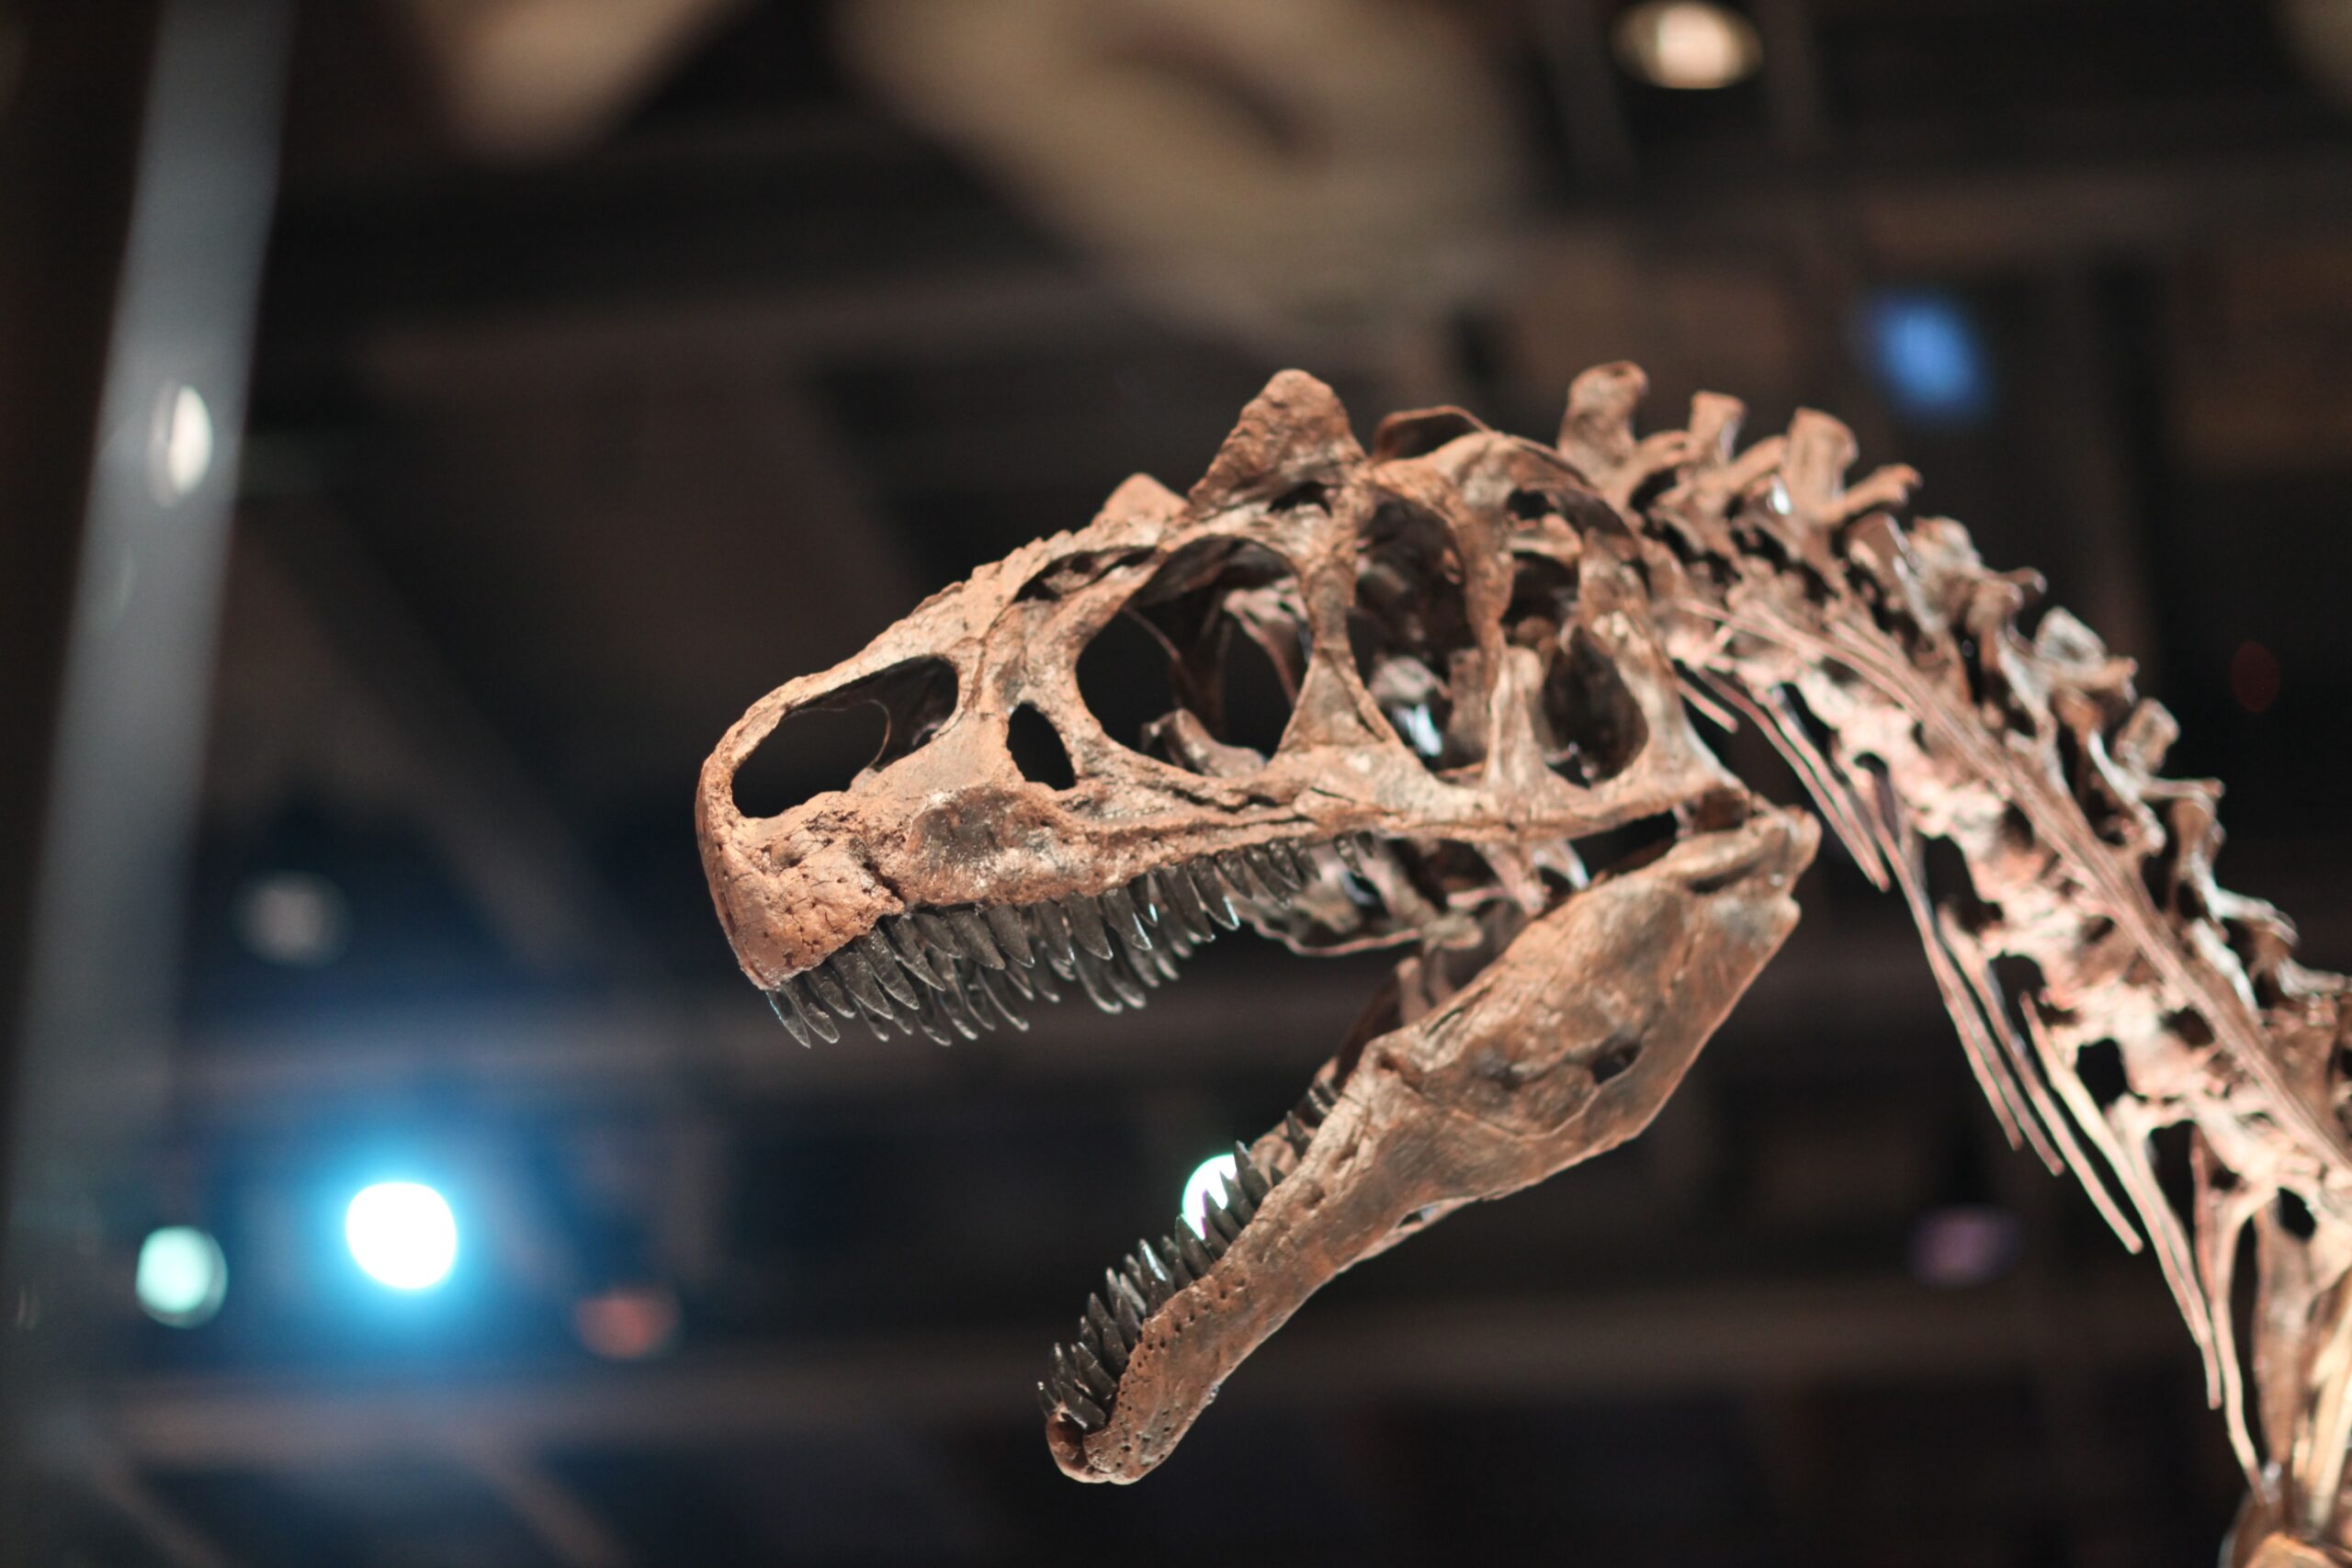 Звезда телеэкранов динозавр Большой Эл снова «ложится под нож» ученых